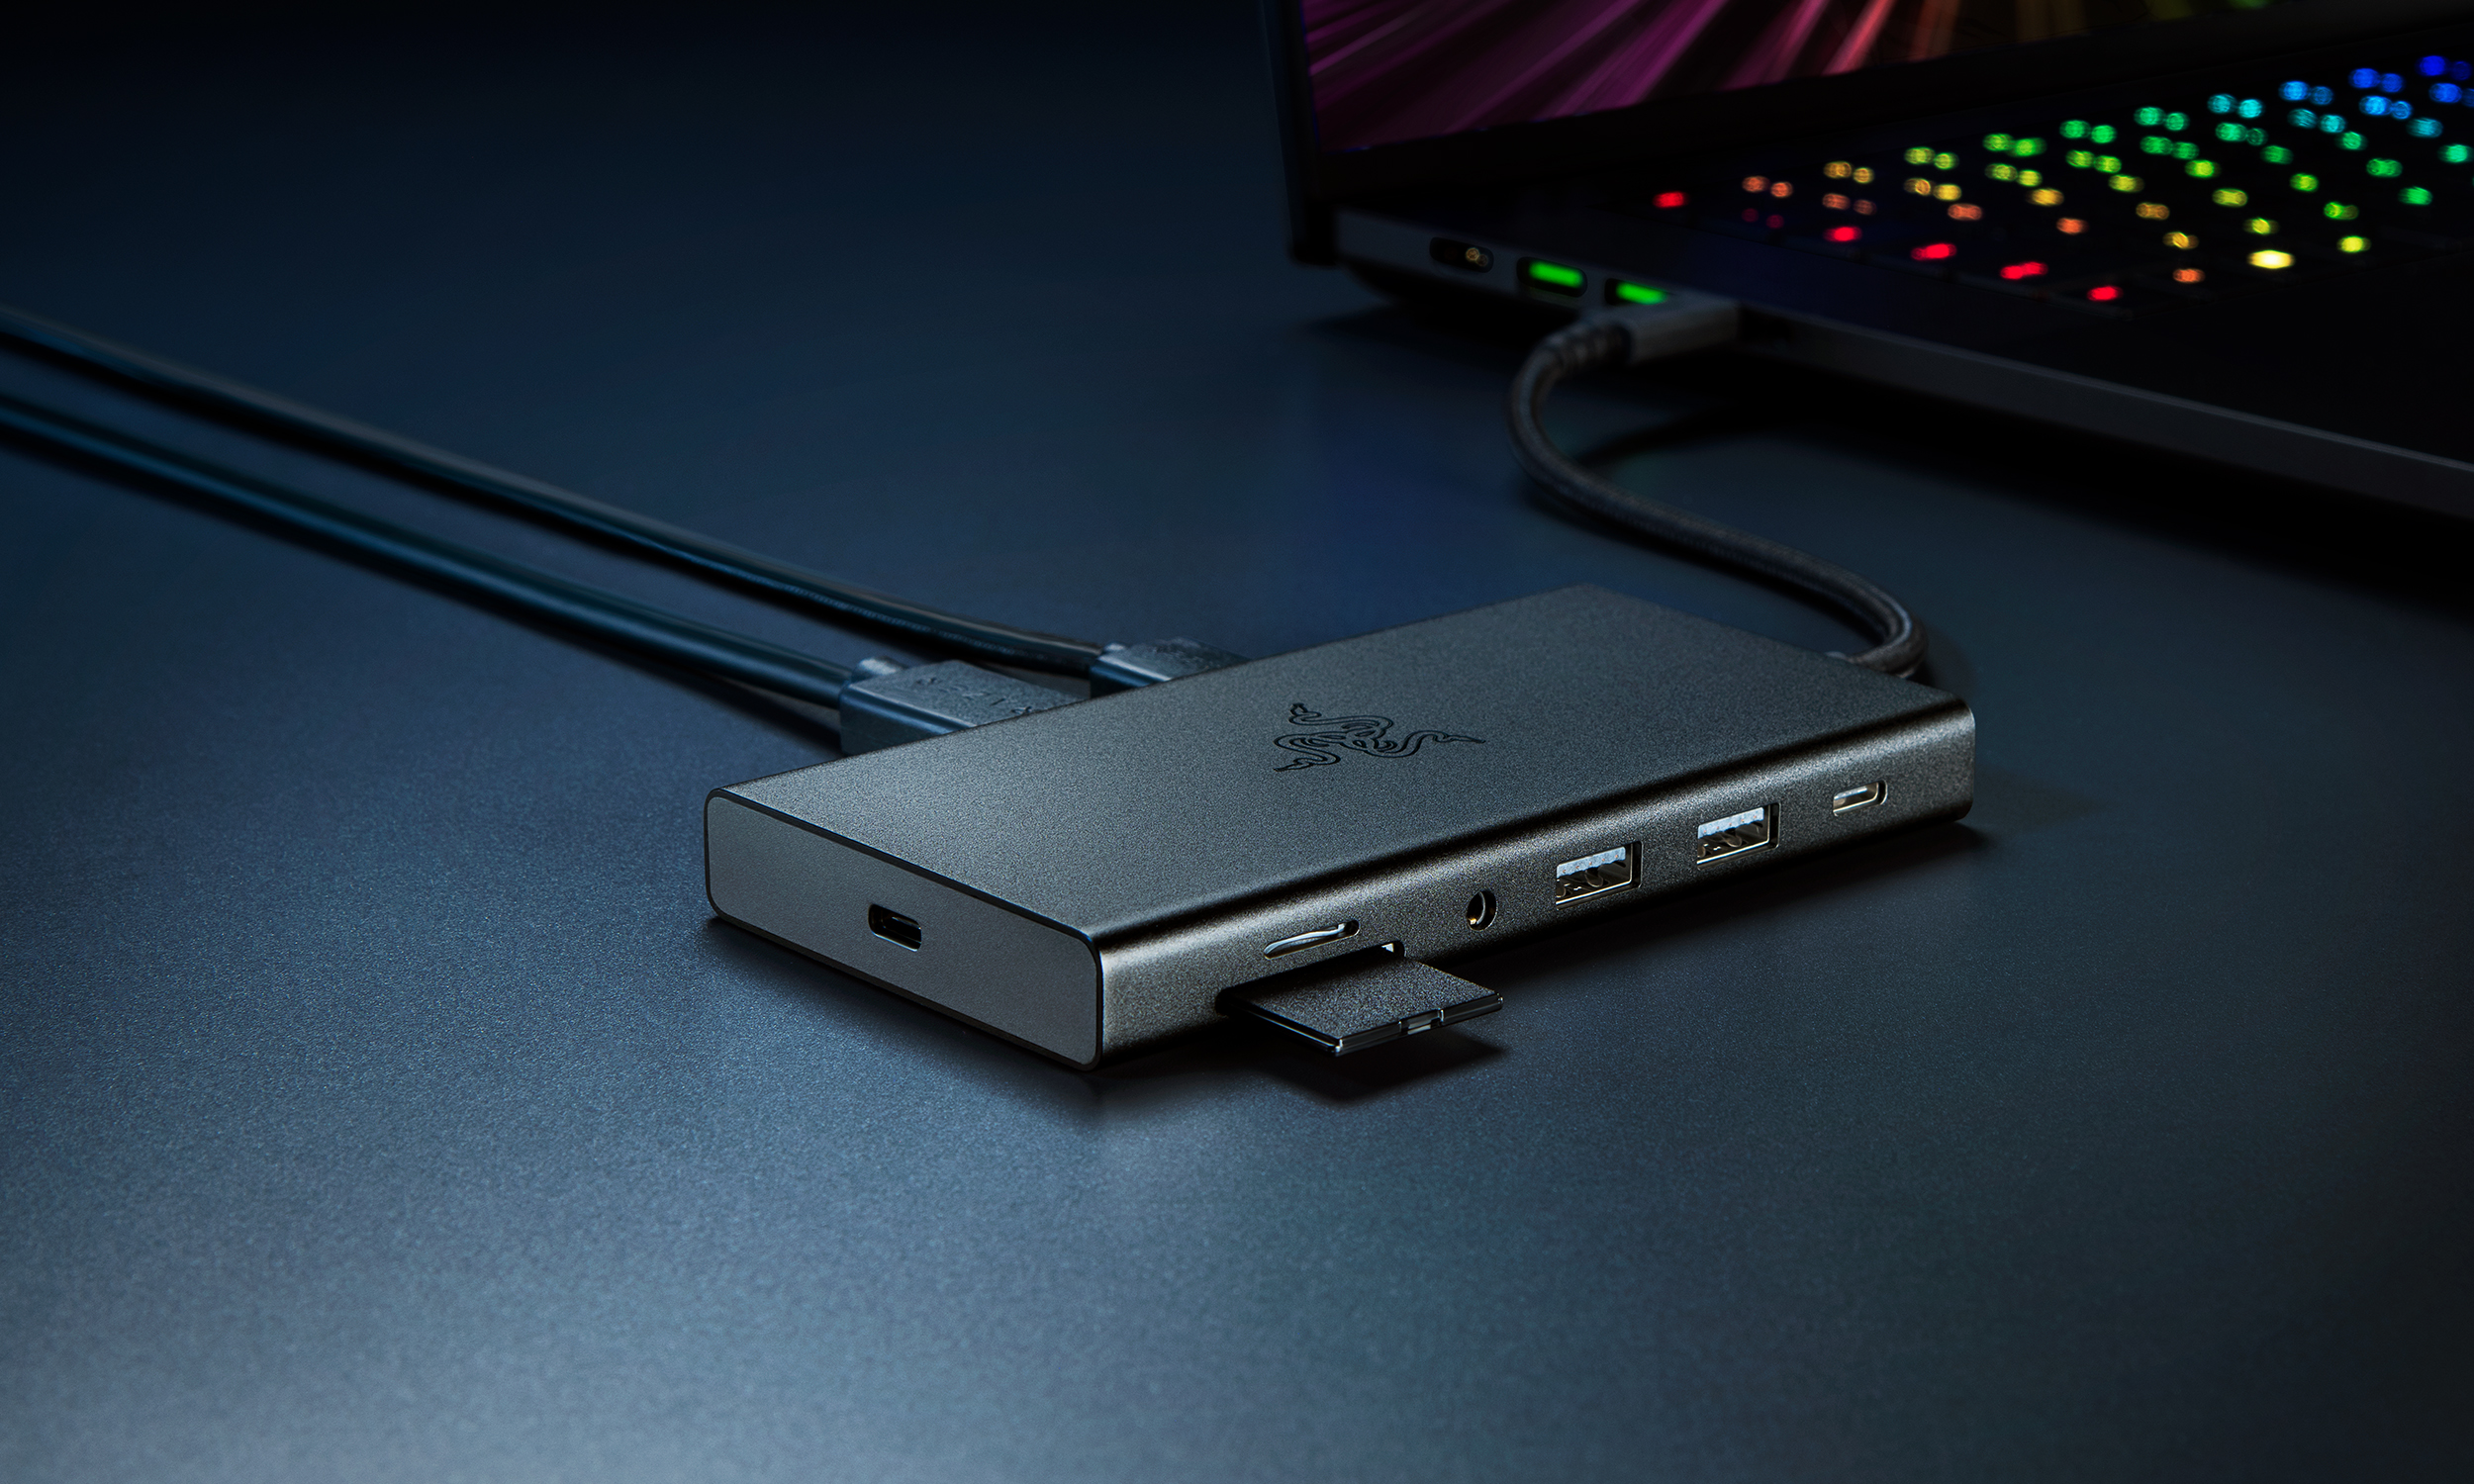 عکس بازاریابی محصول از Razer USB C Dock.  توپی با یک لپ تاپ بازی در پشت آن روی یک میز قرار دارد.  دارای چندین درگاه باز و کارت SD در نیمه راه است.  روی یک میز آبی تیره با سایه های نمایشی قرار دارد.